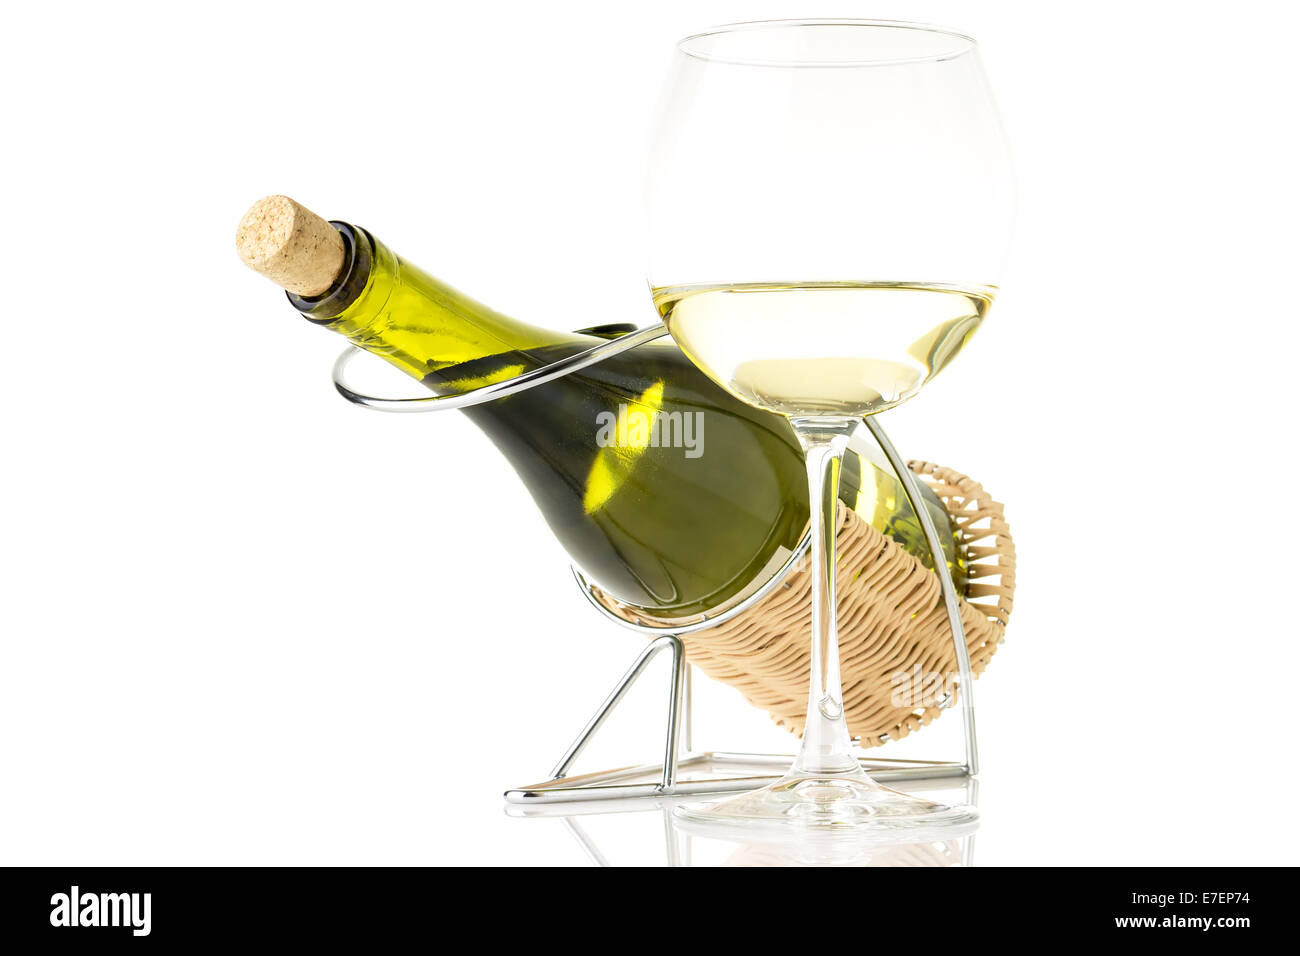 Porte-bouteille en verre de vin avec shardonnay isolé sur fond blanc Banque D'Images